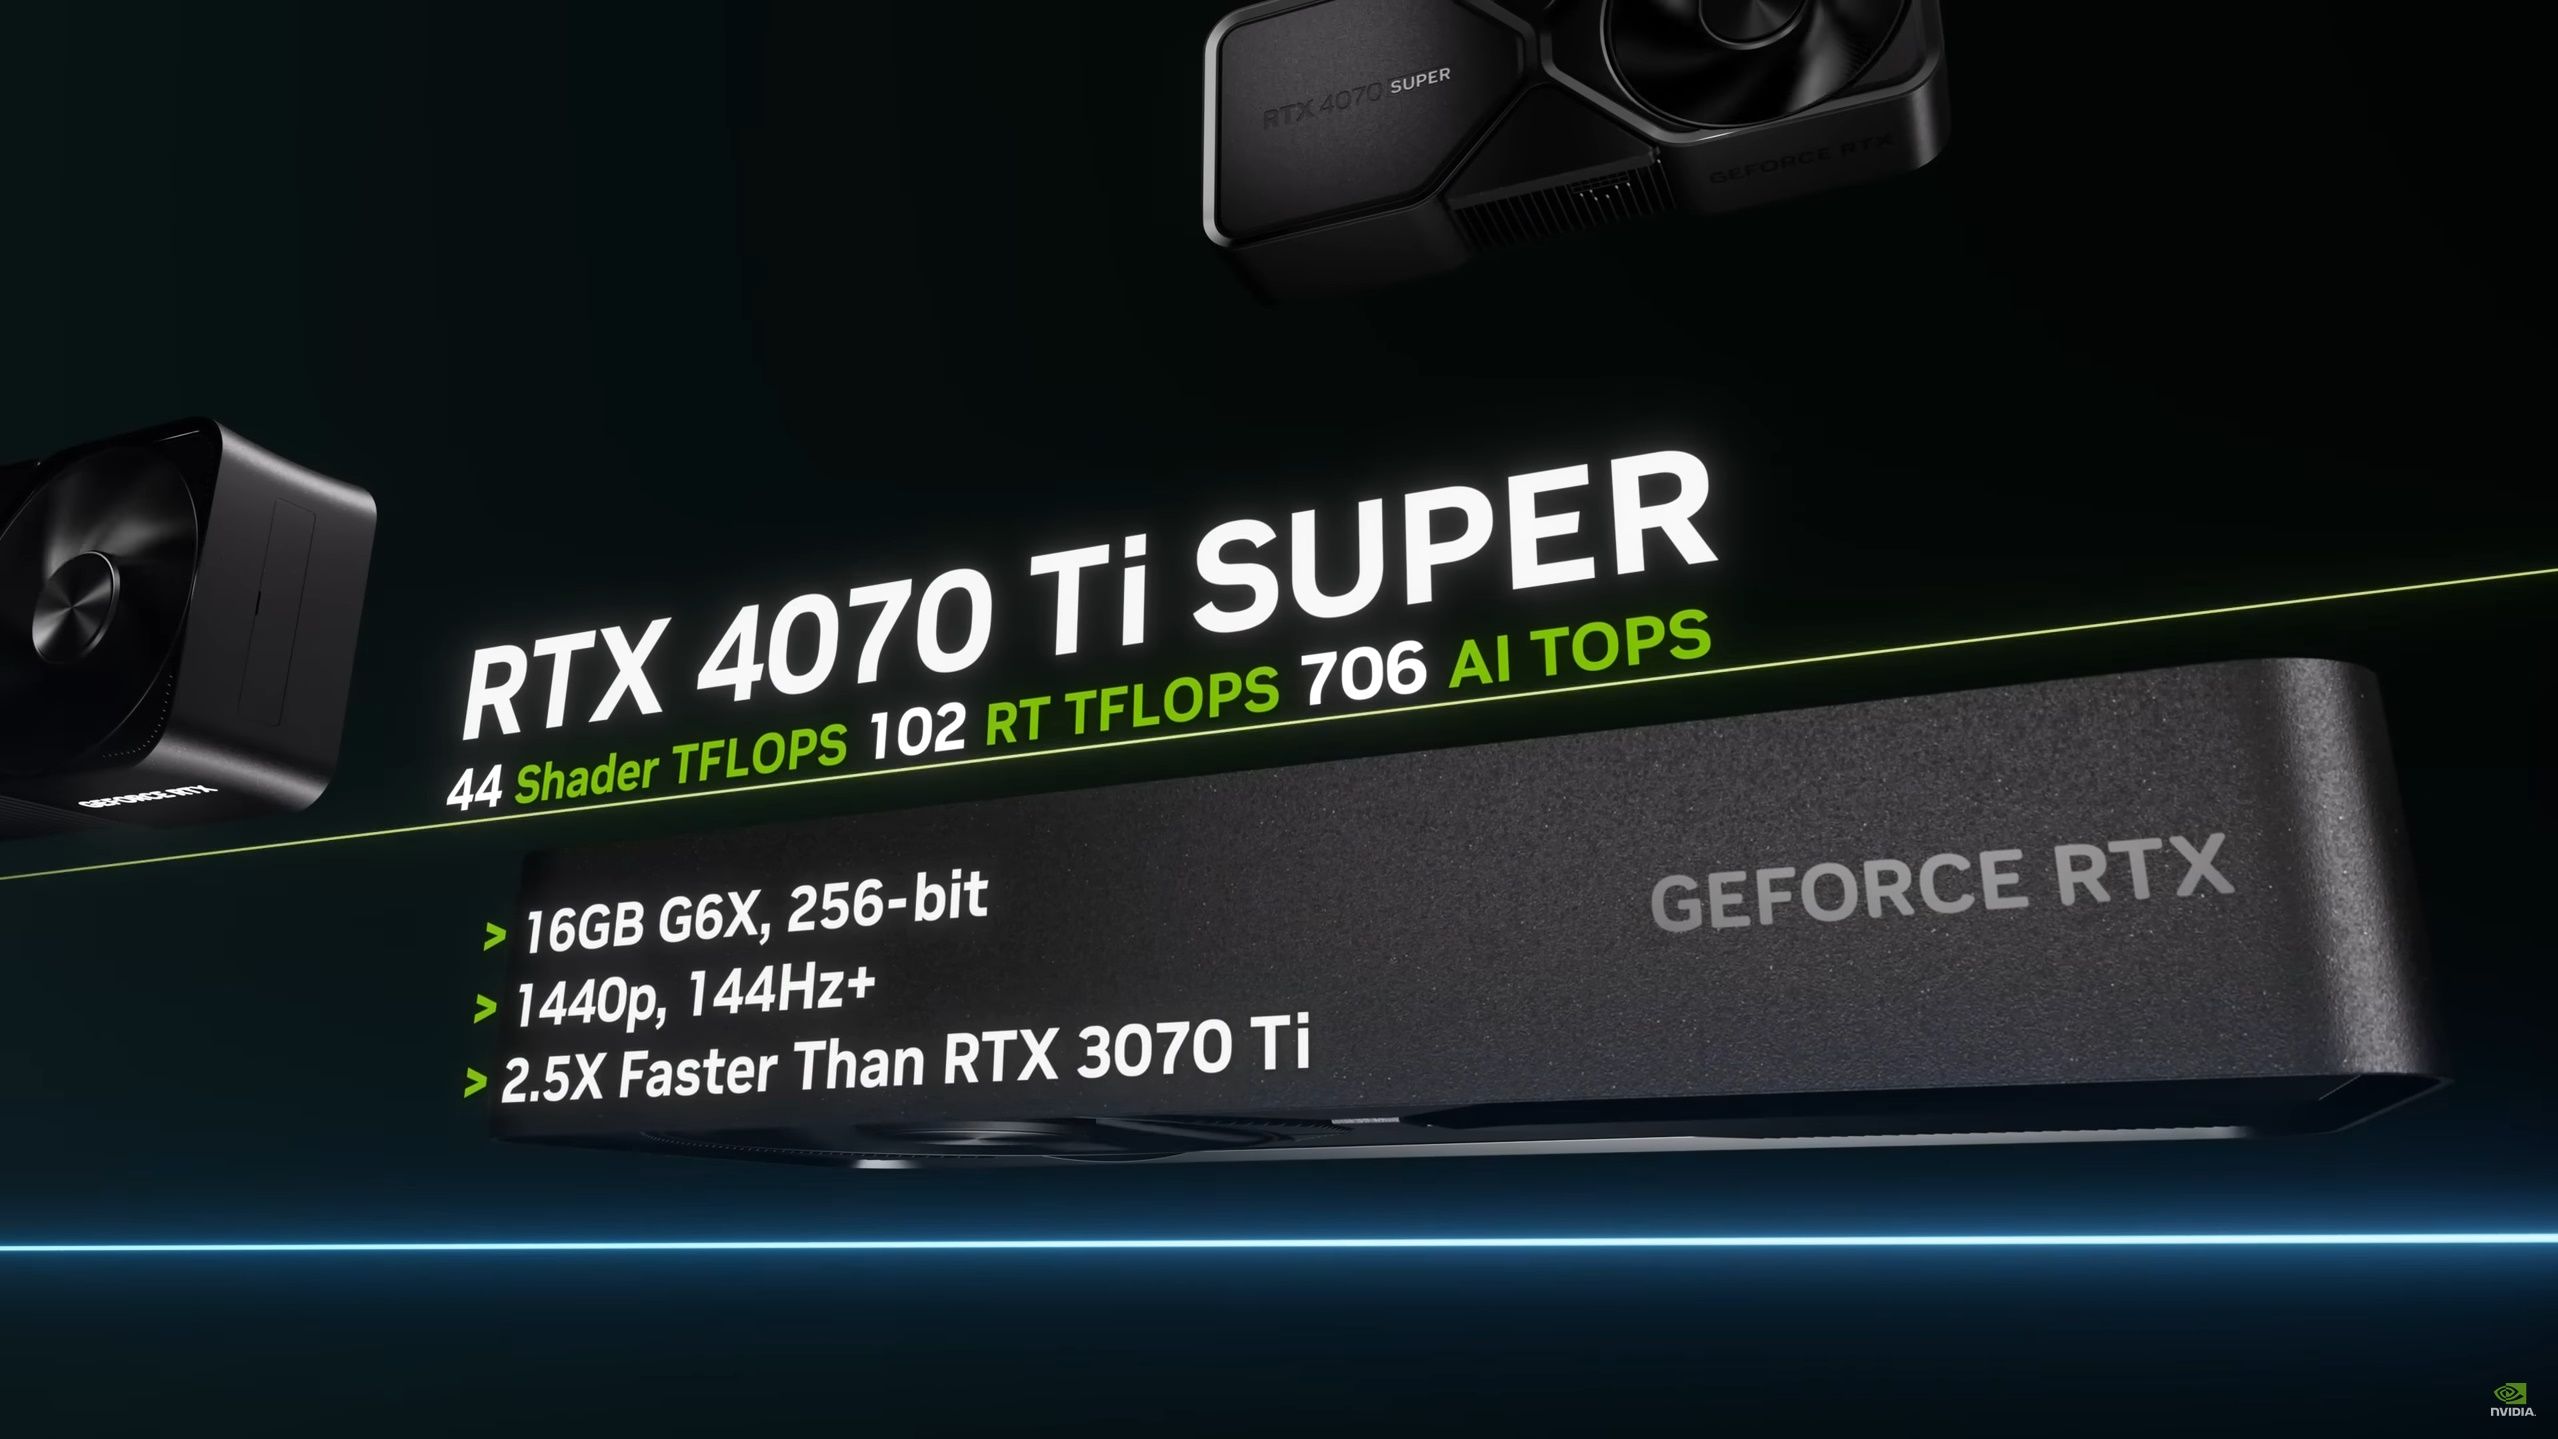 Nvidia GeForce RTX 4070 Ti Super GPU info